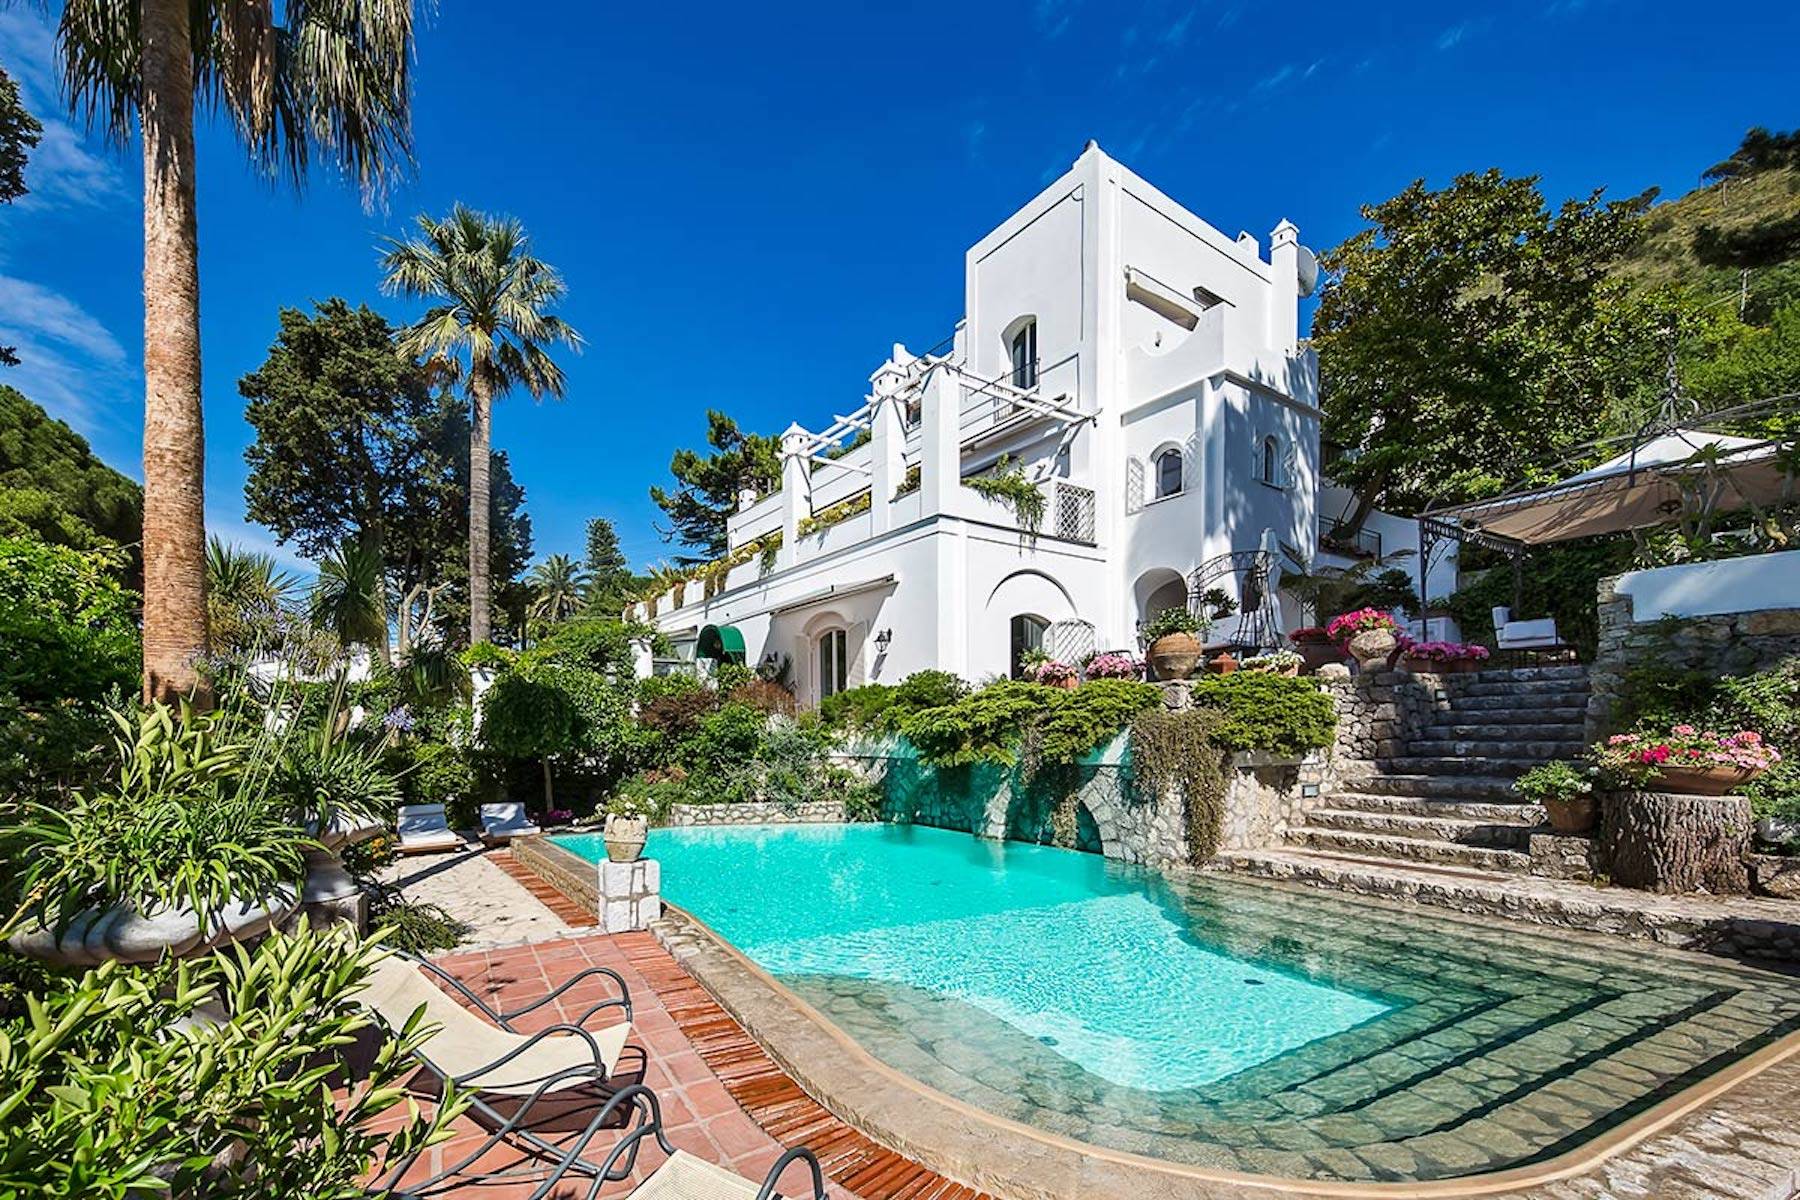 Villa in Vendita a Capri: 5 locali, 790 mq - Foto 1